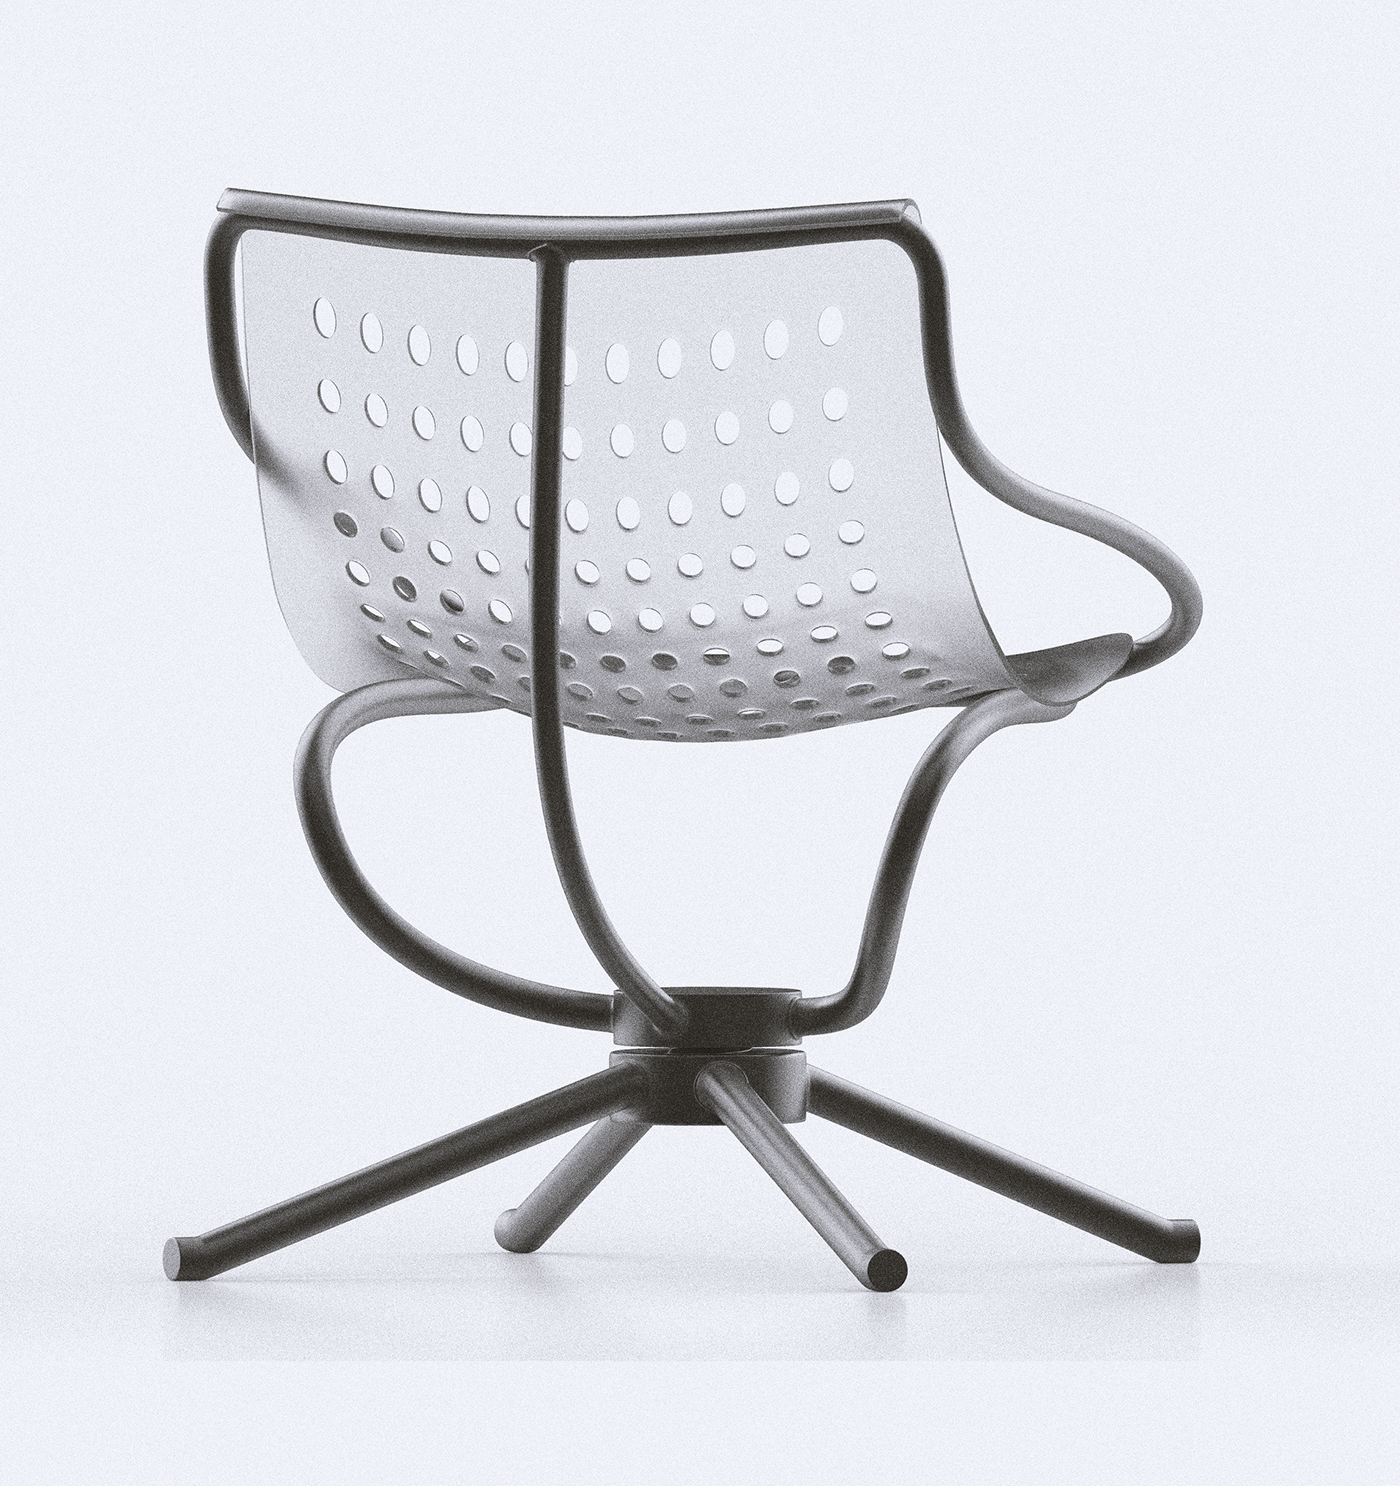 madina——金属框架的椅子,舒适与极简主义的结合